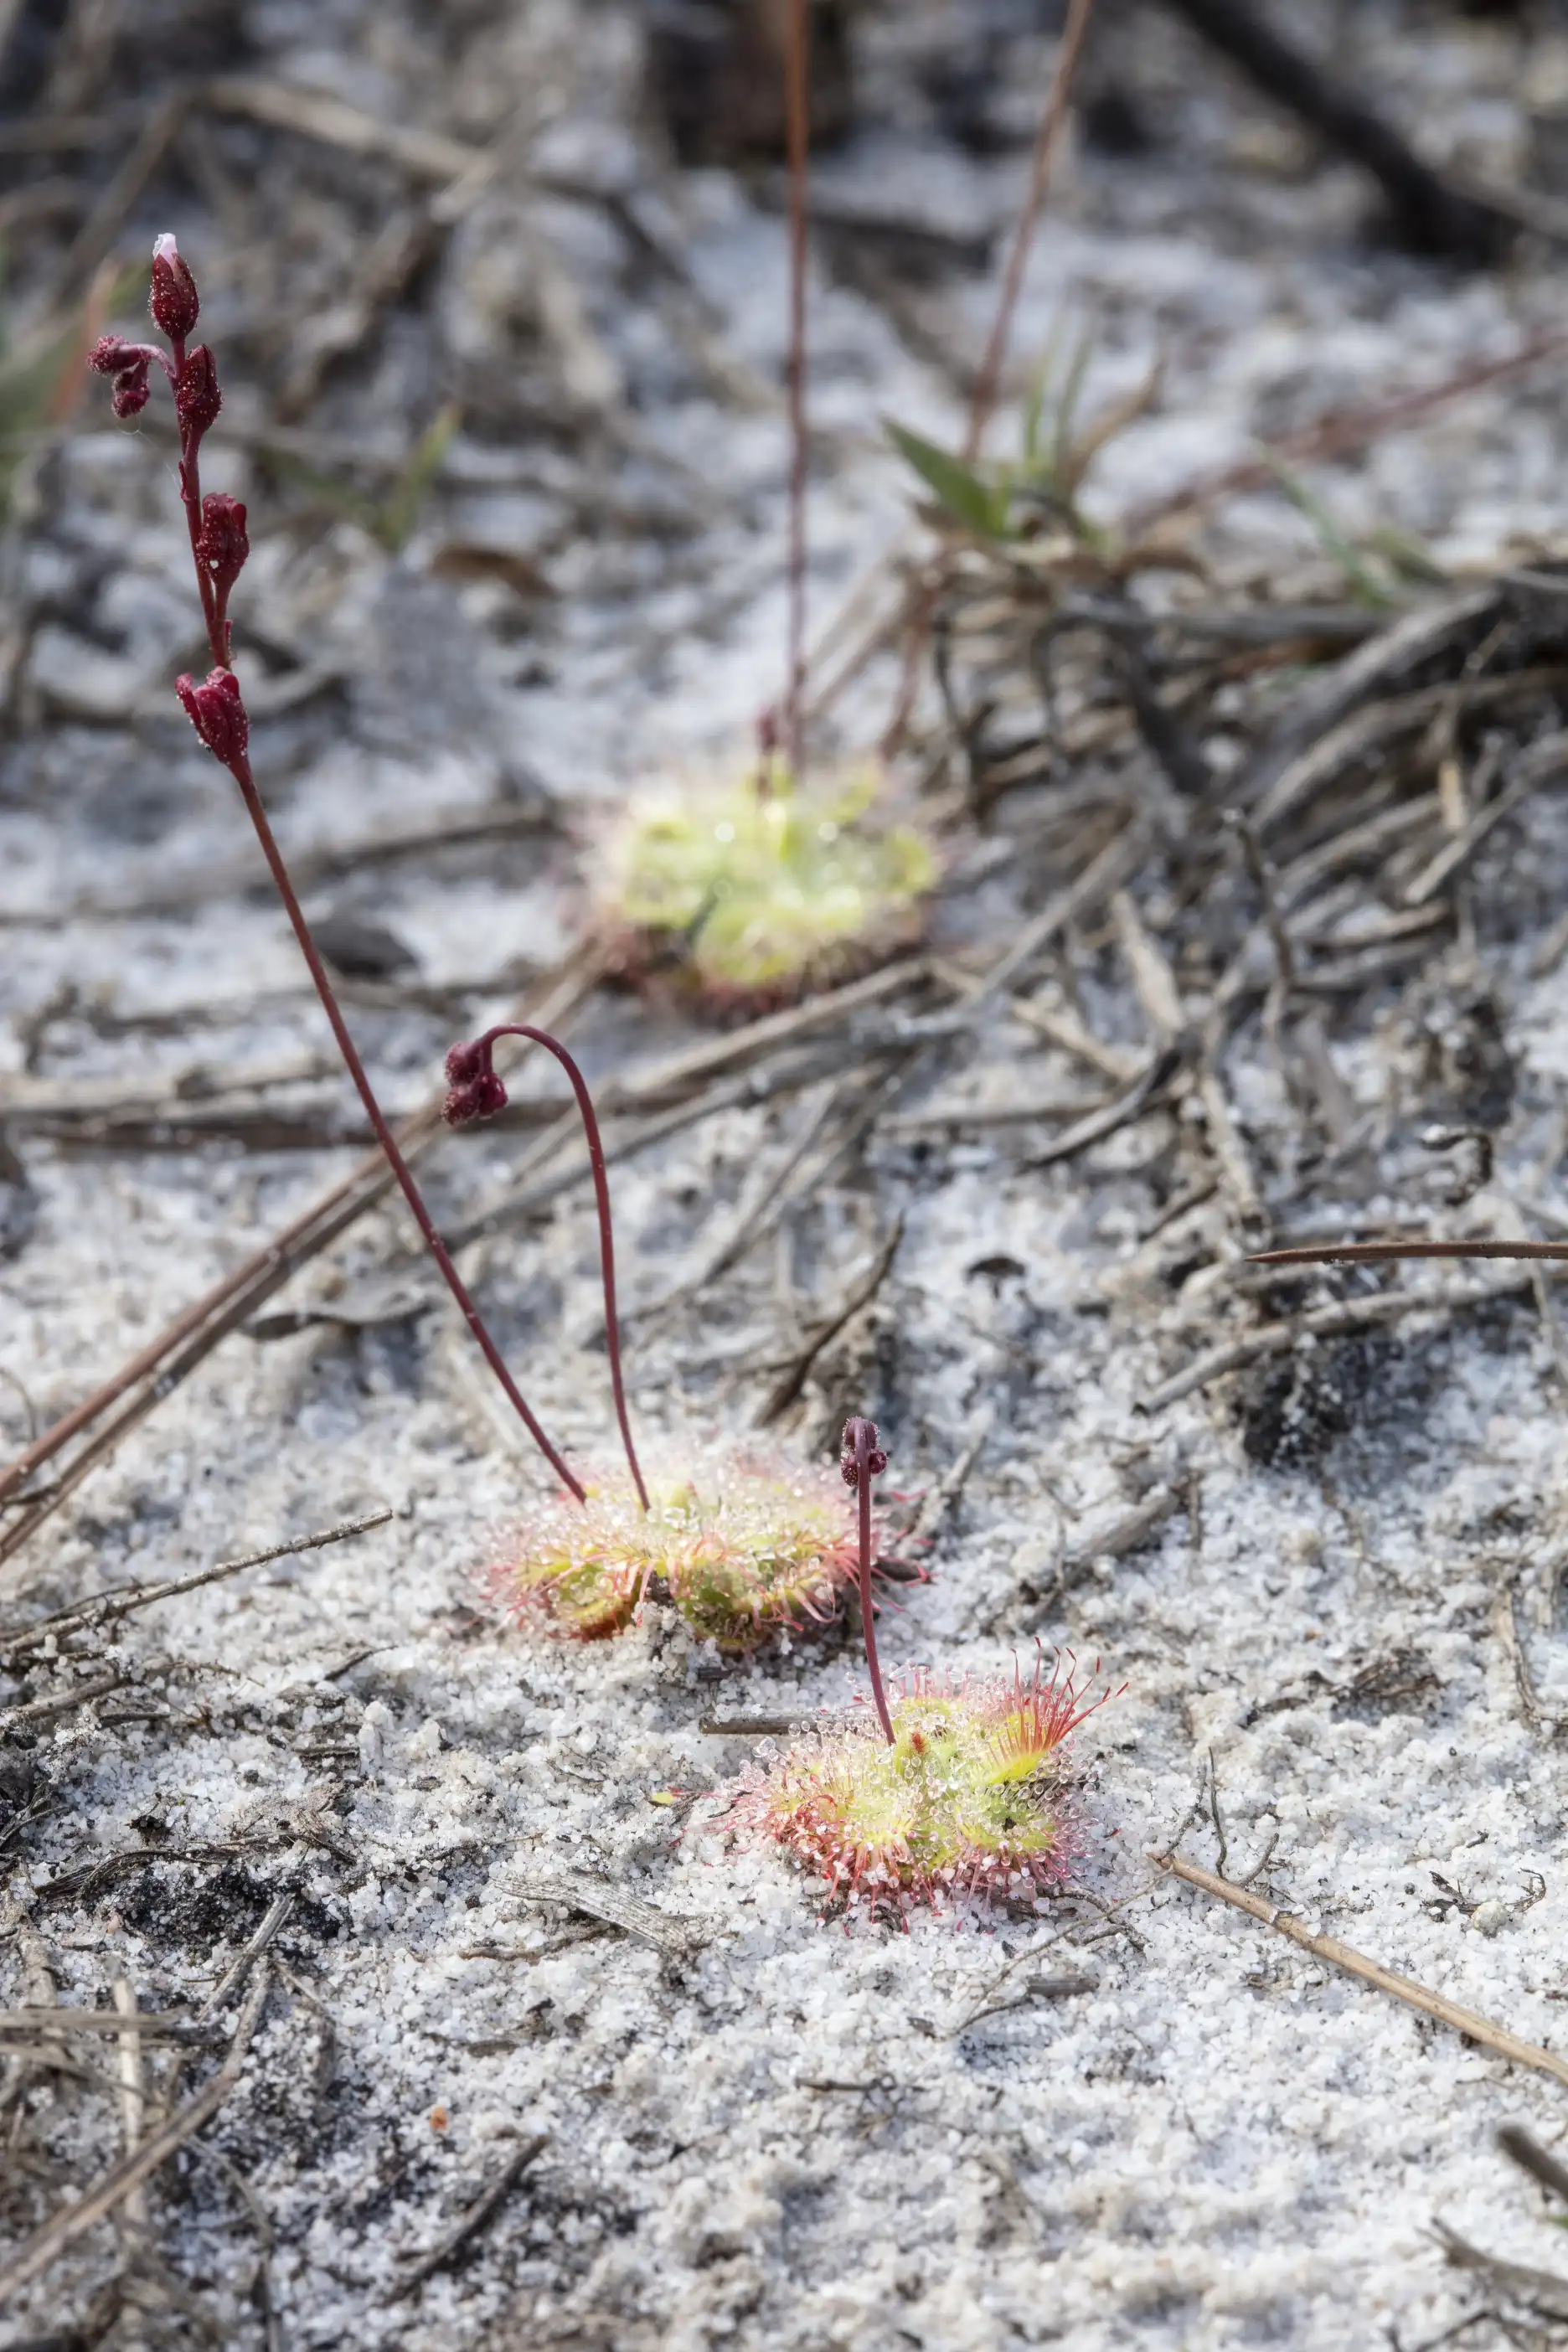 Drosera burmannii plants growing in sand